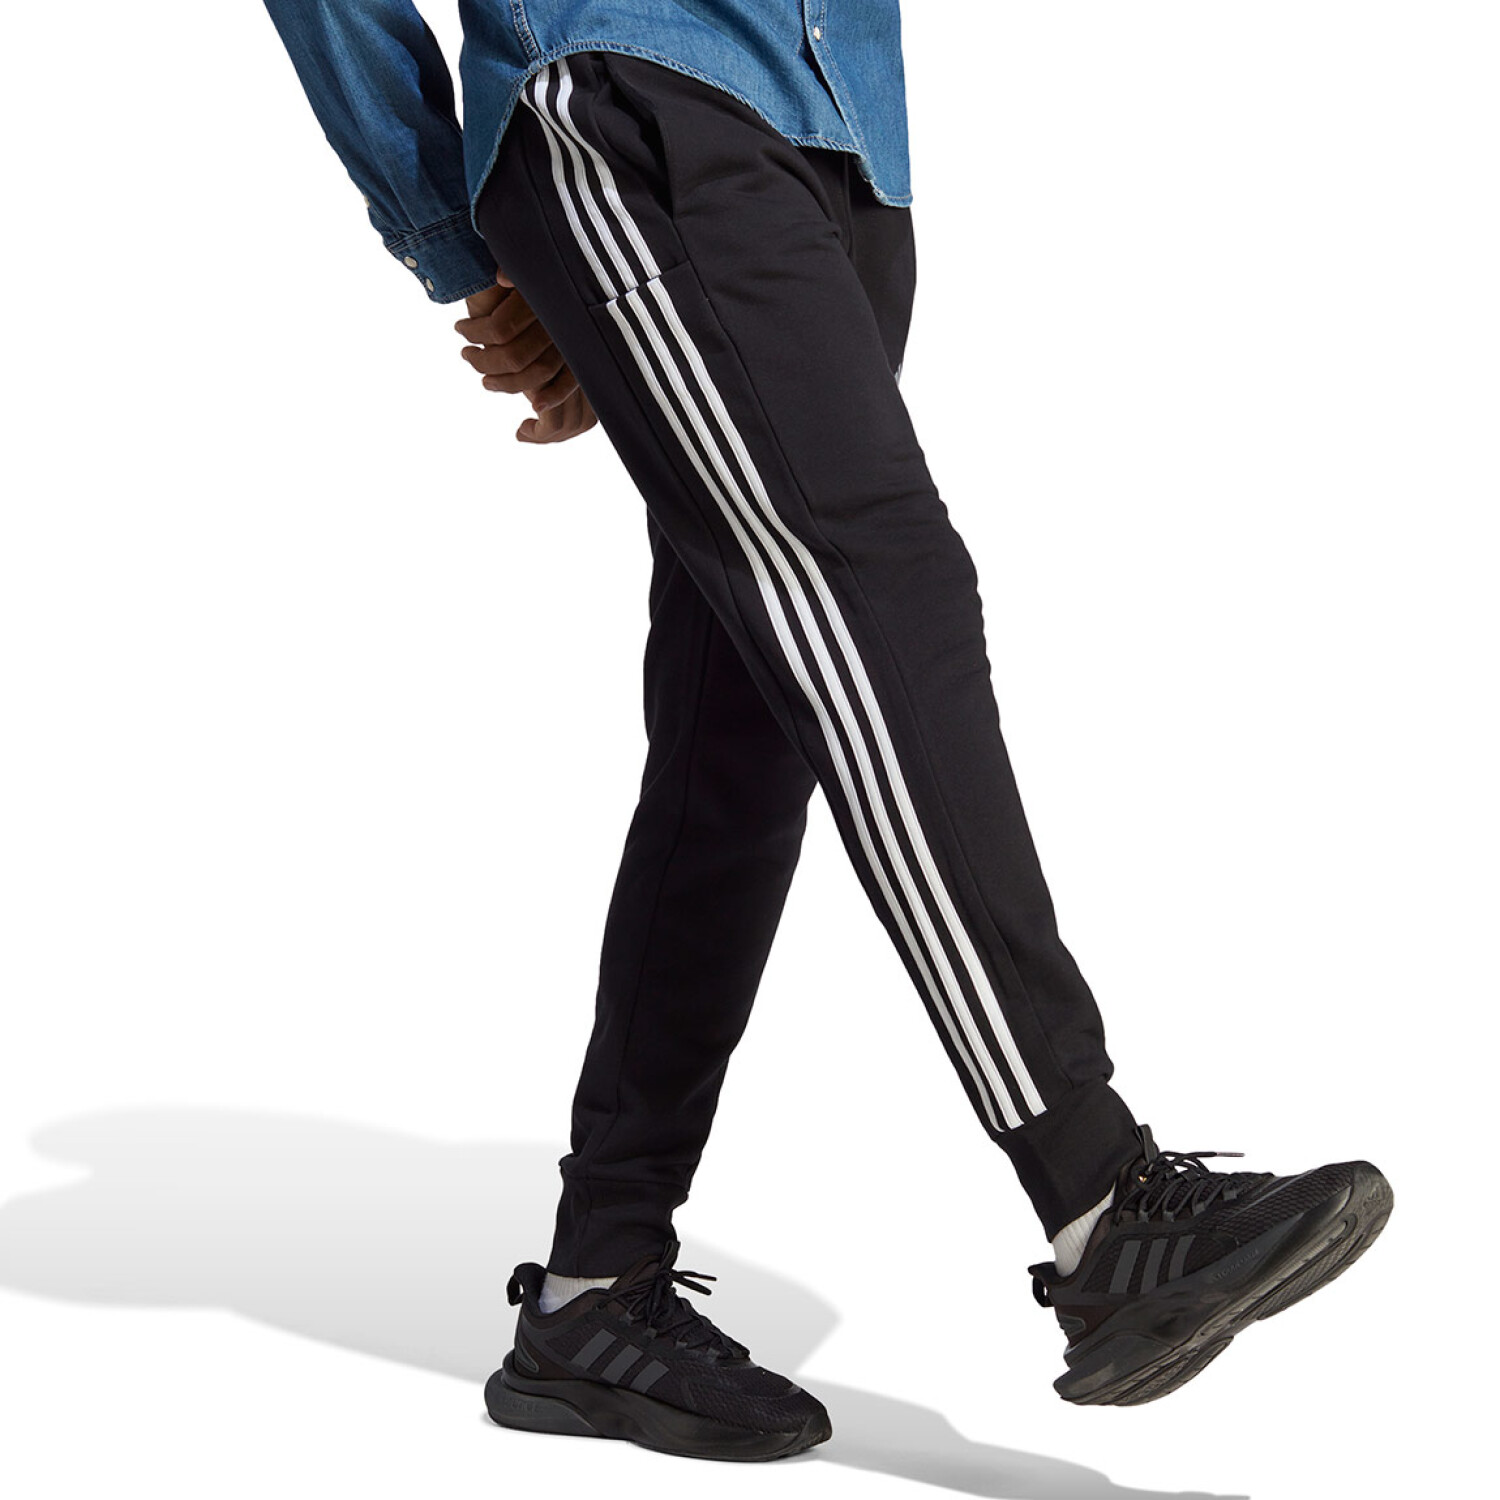 Adidas 3-Stripes FT TC Pants - Pantalones de deporte Hombre